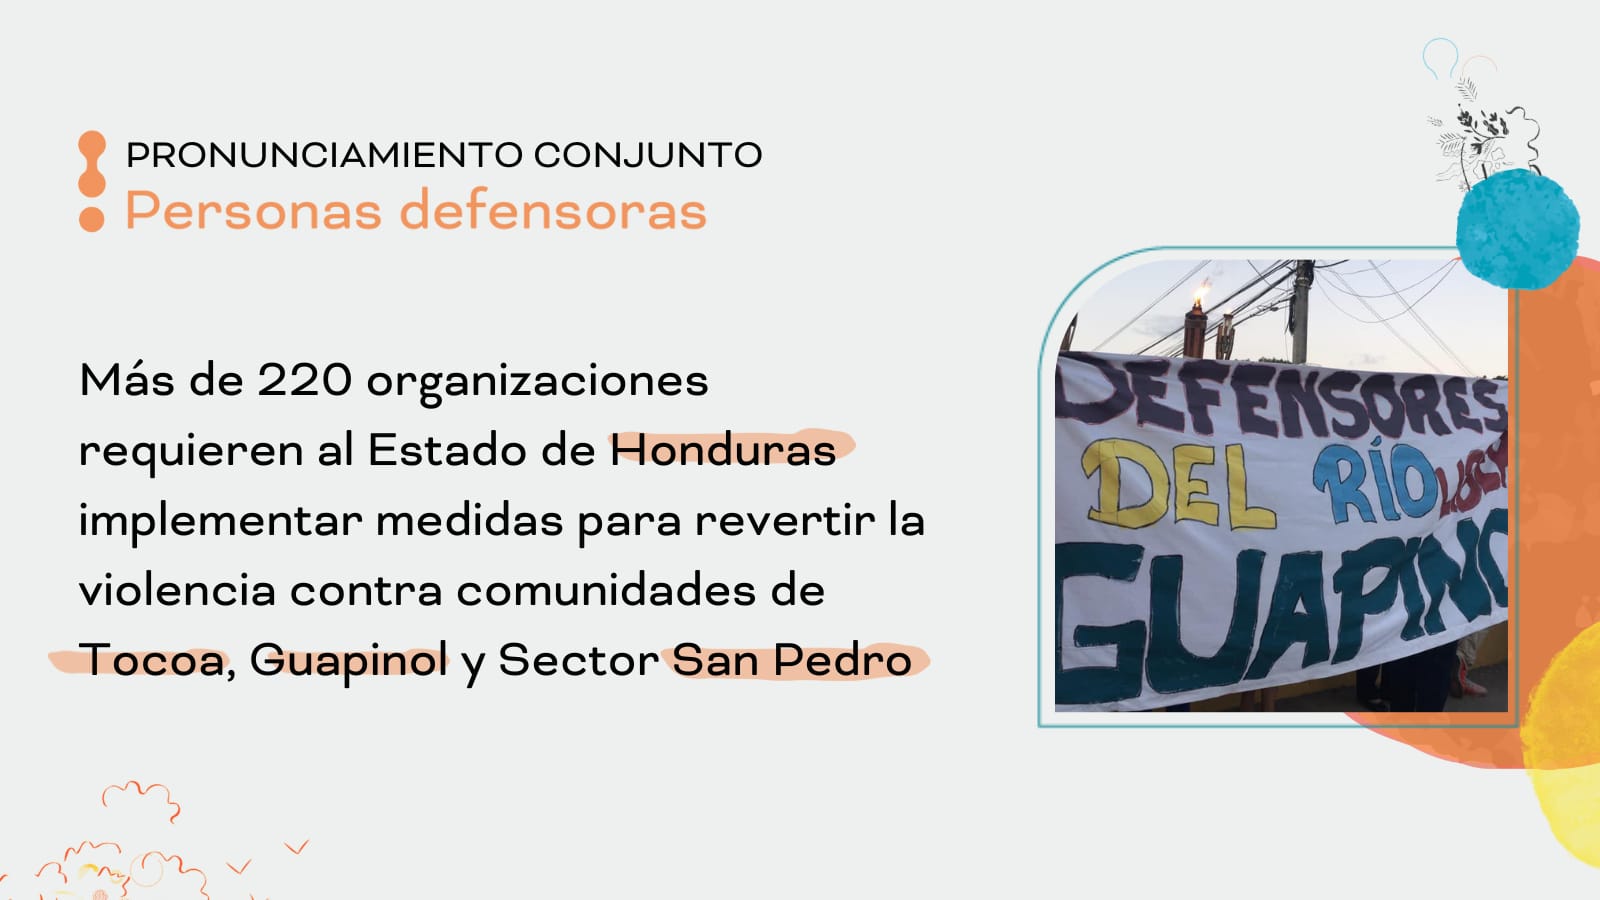 El Observatorio por la Justicia de los Defensores del Río Guapinol y más de 220 organizaciones nacionales e internacionales requieren al Estado de Honduras a implementar medidas contundentes para revertir violencia sostenida contra las comunidades de Guap